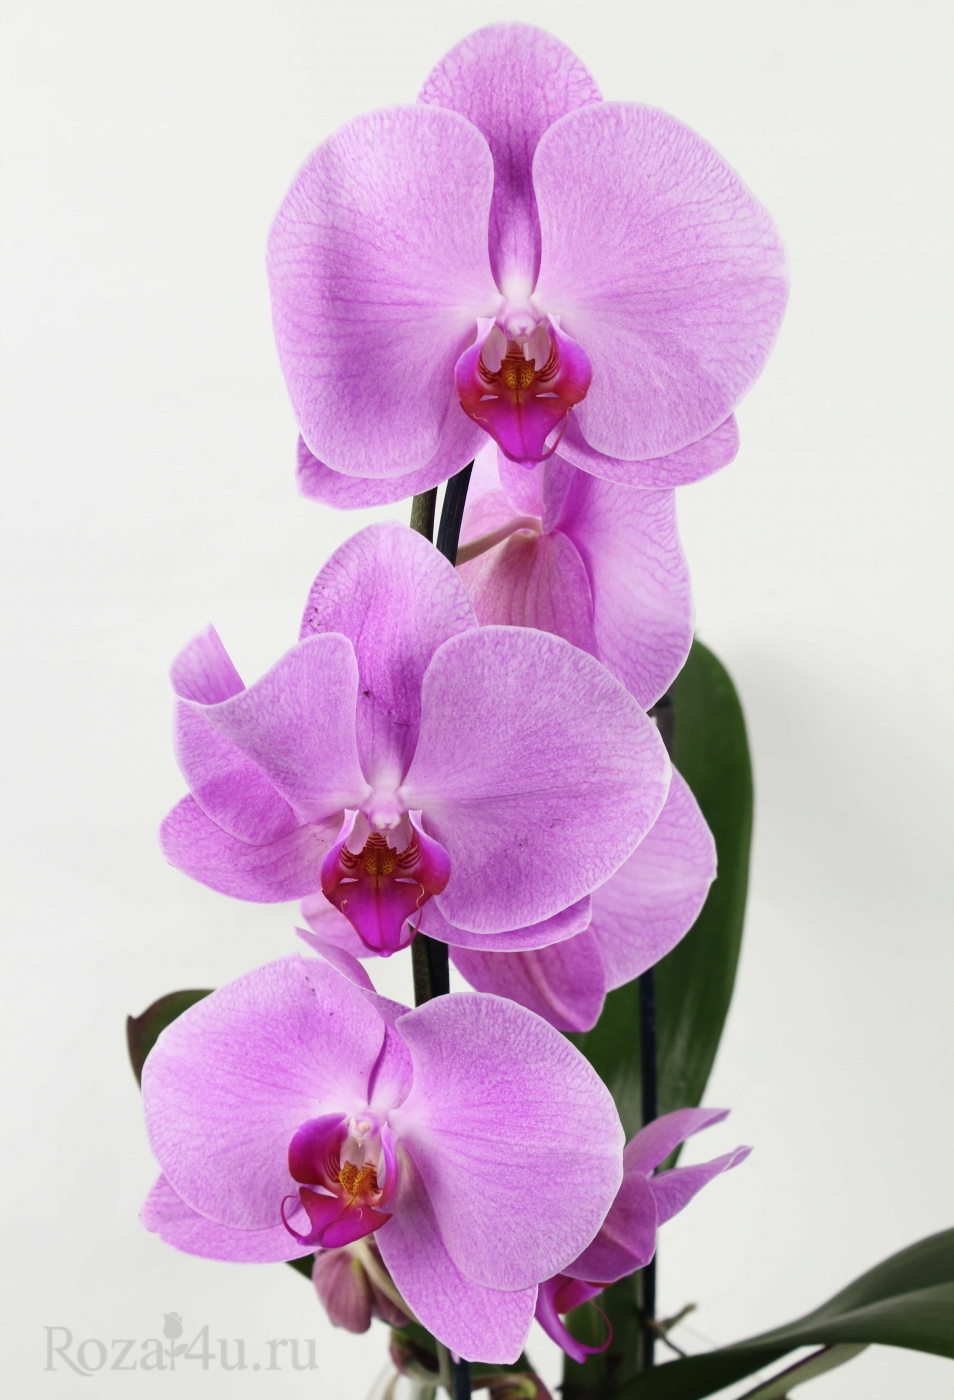 Где можно купить орхидею в горшке в москве поздравление с днем рождения тедди